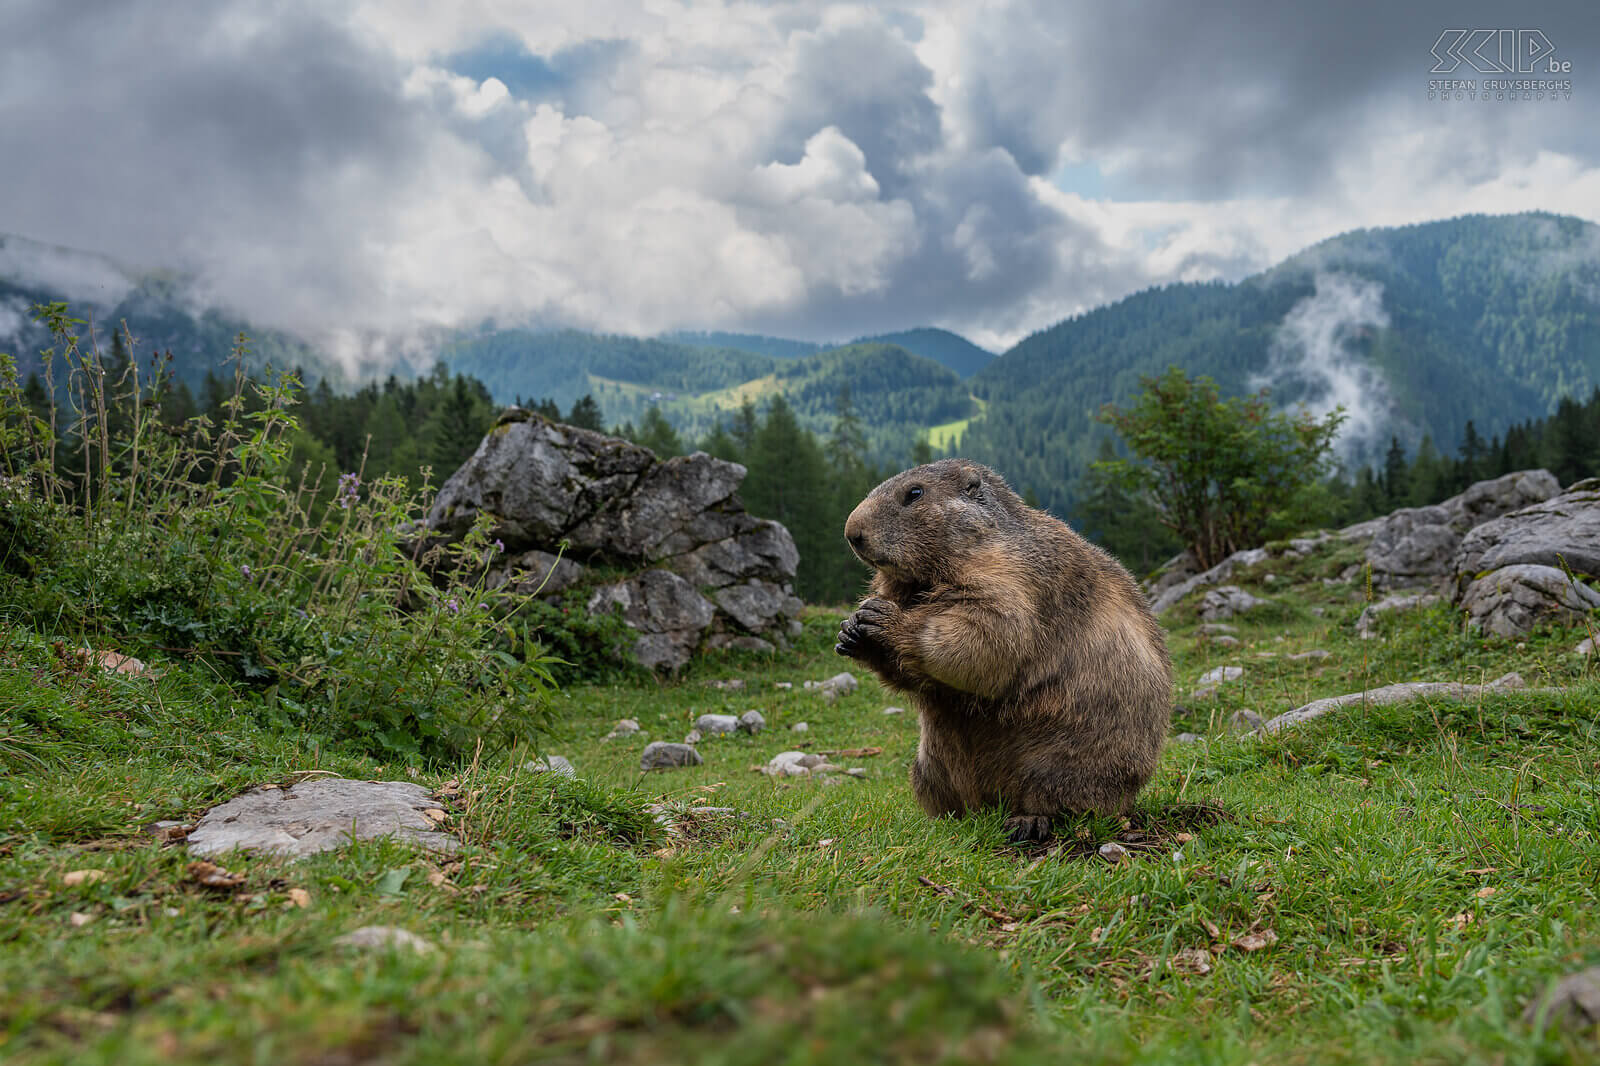 Bachalm - Alpenmarmot In de vallei van Bachalm nabij Filzmoos woont er een grote kolonie alpenmarmotten (Marmota marmota) oftewel murmeltieren in het Dutis. Ze zijn weinig schuw en komen dichtbij de wandelaars die eten bijhebben. De alpenmarmot voedt zich met grassen, kruiden en soms eet hij ook bloemen, onrijpe vruchten en wortels. Het is een dagdier dat leeft in een familiegroep in een diep, uitgebreid gangenstelsel, een burcht. Stefan Cruysberghs